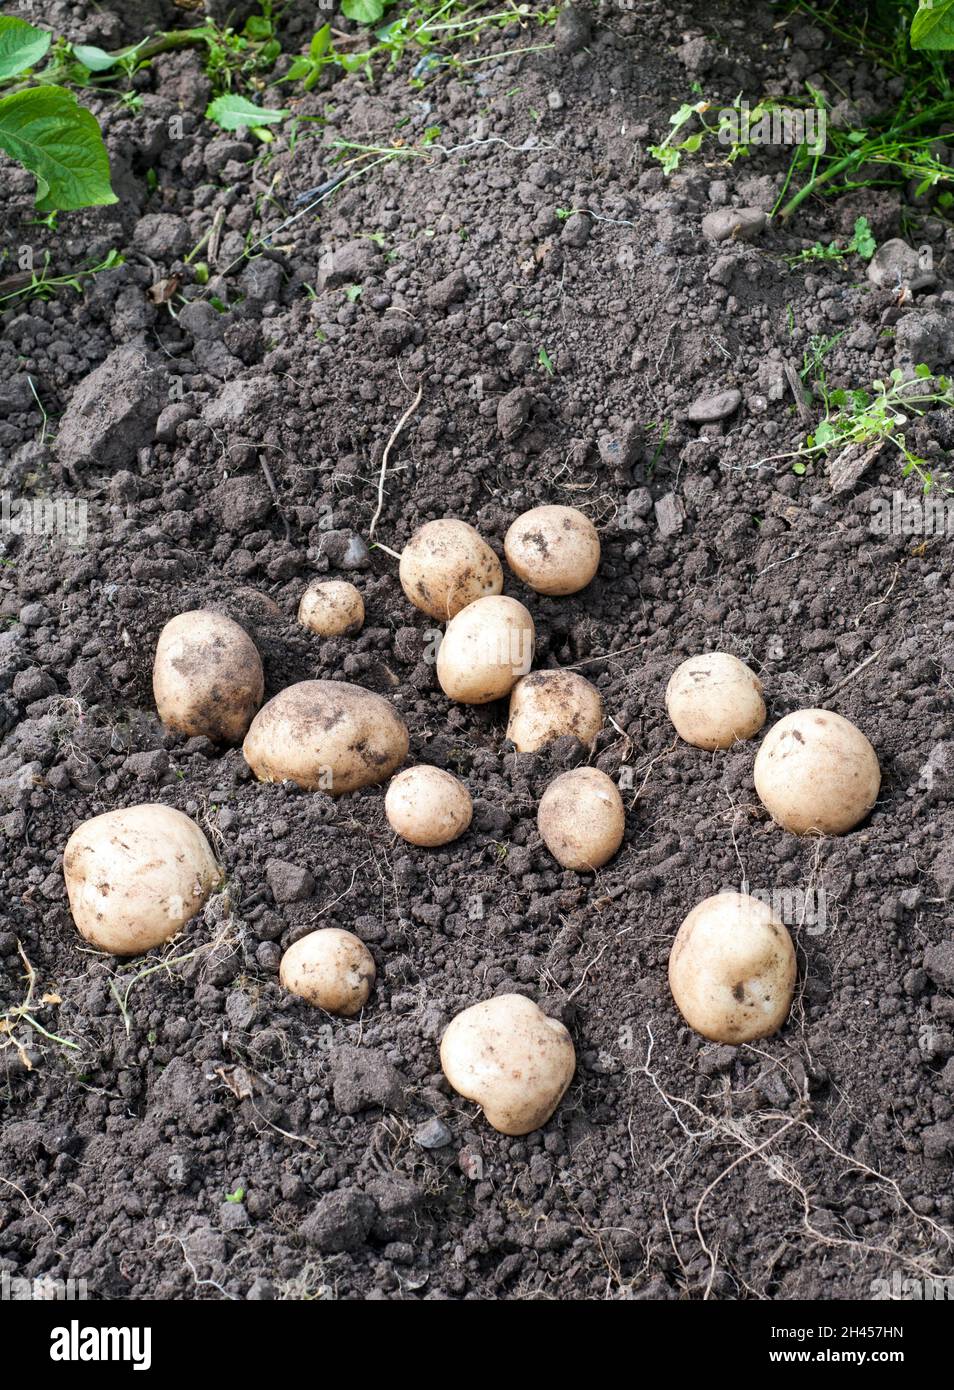 Frisch gegrabene Rocket Potatoes im juli eine erste frühe Kartoffel, die eine schwere Cropper ist und als gekochte oder Salatkartoffel verwendet werden kann Stockfoto